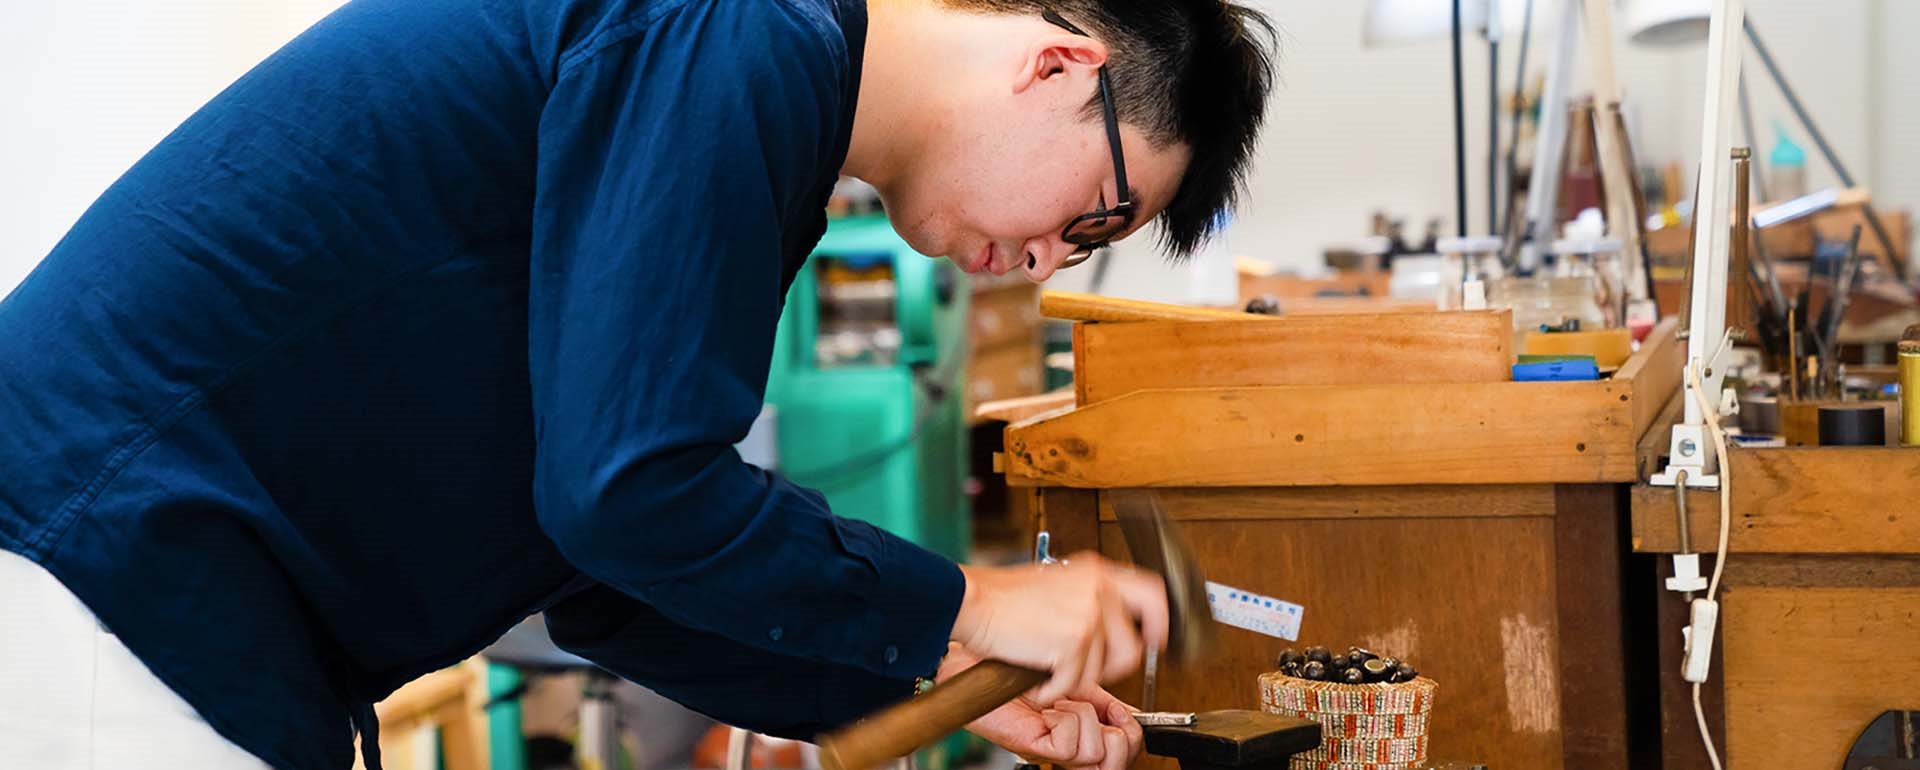 DIY手作教學帶你了解金工、木雕和豆腐製作，來三峽體驗一日職人